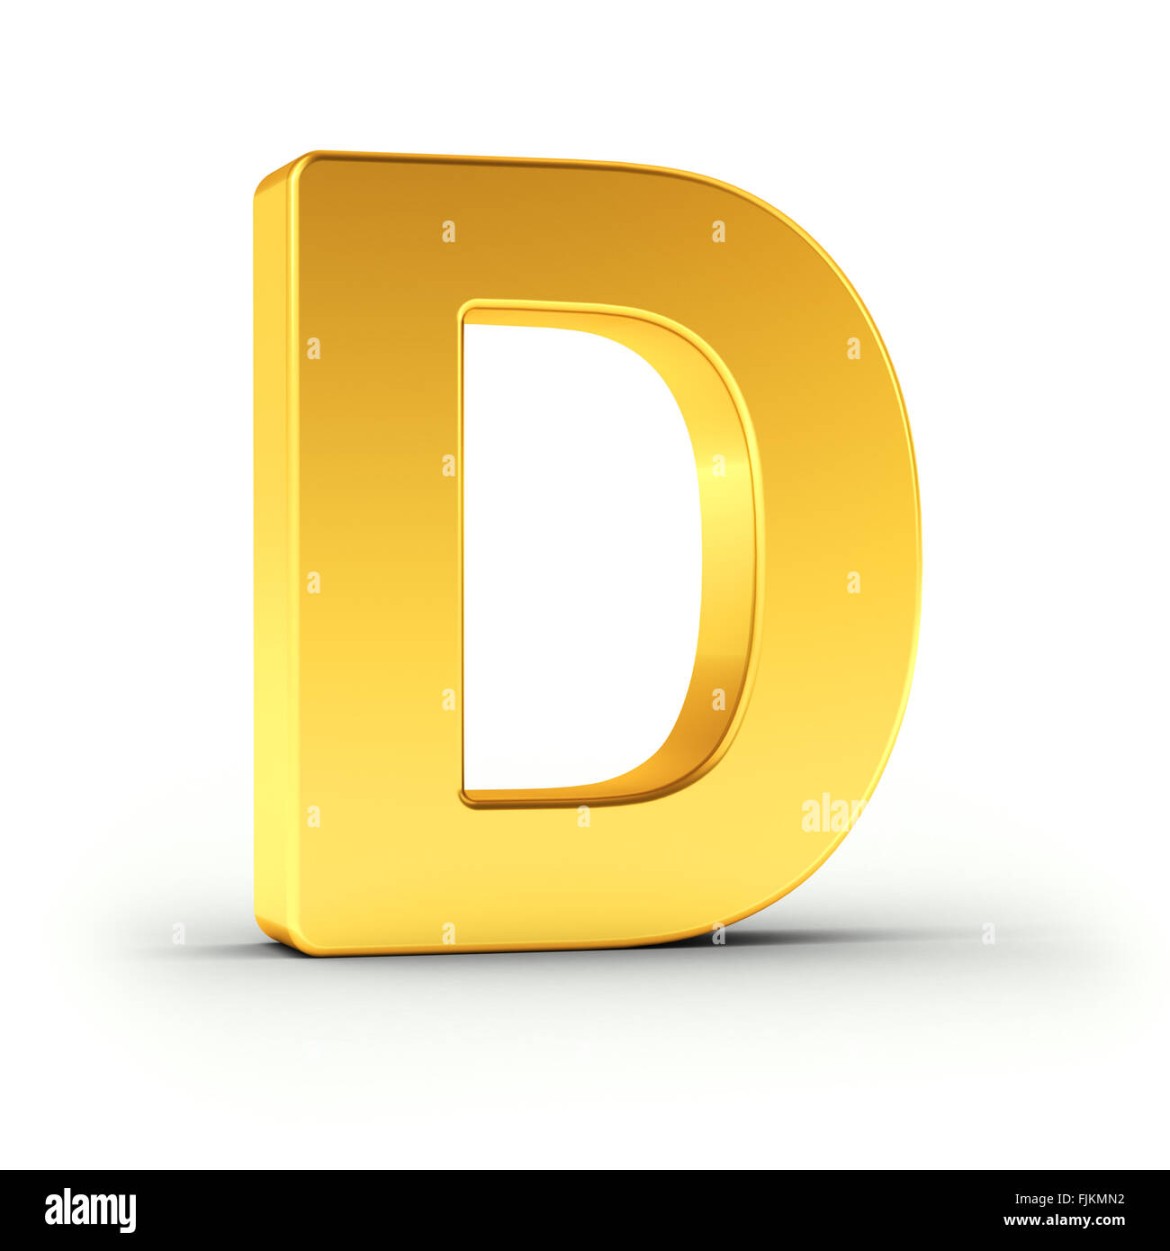 Der Buchstabe D als polierten goldenen Objekt Stockfotografie - Alamy